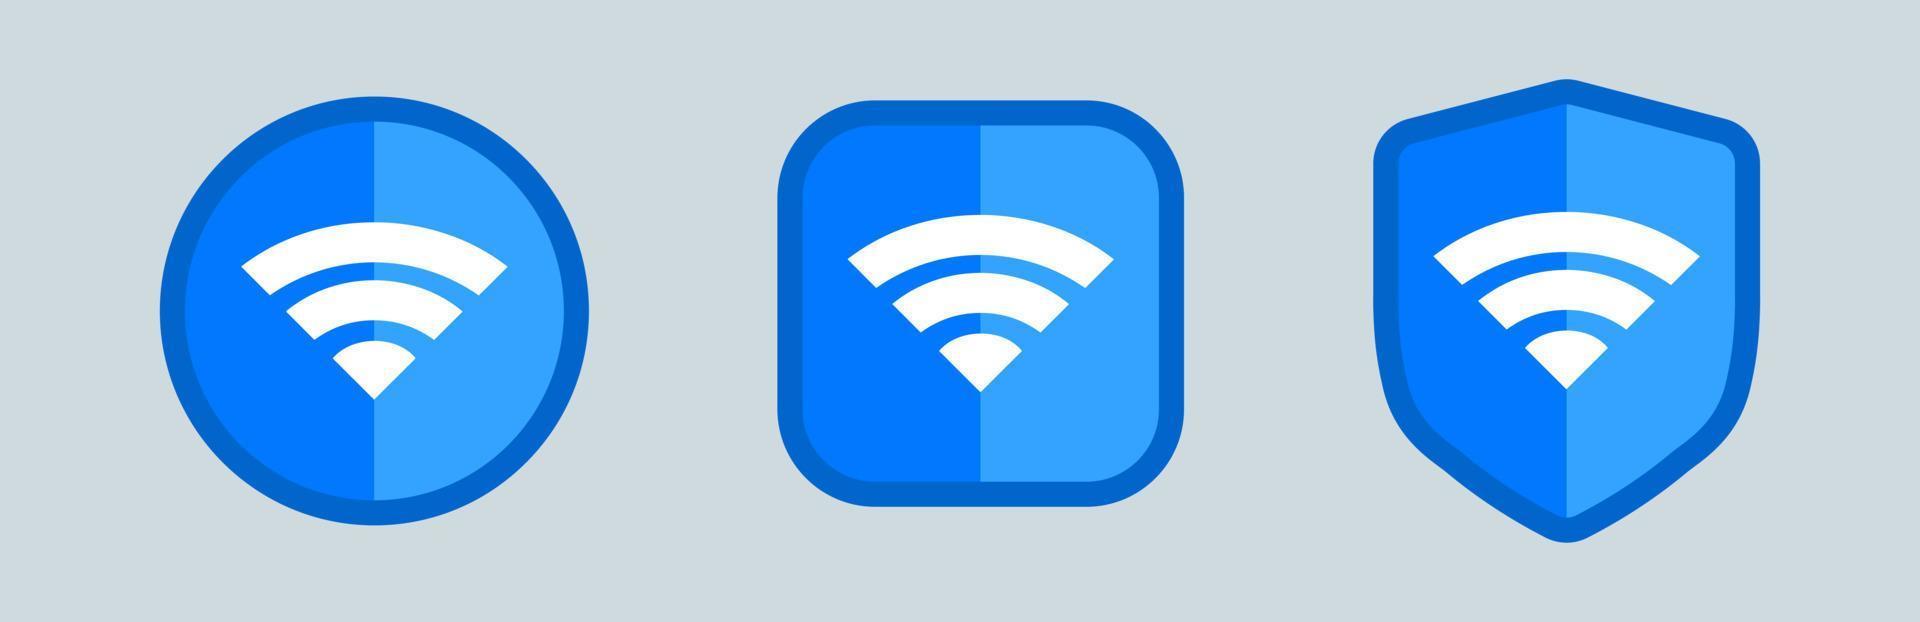 trådlös och wifi-ikon eller tecken för fjärråtkomst till internet. olika blå wifi-ikonuppsättning. vektor